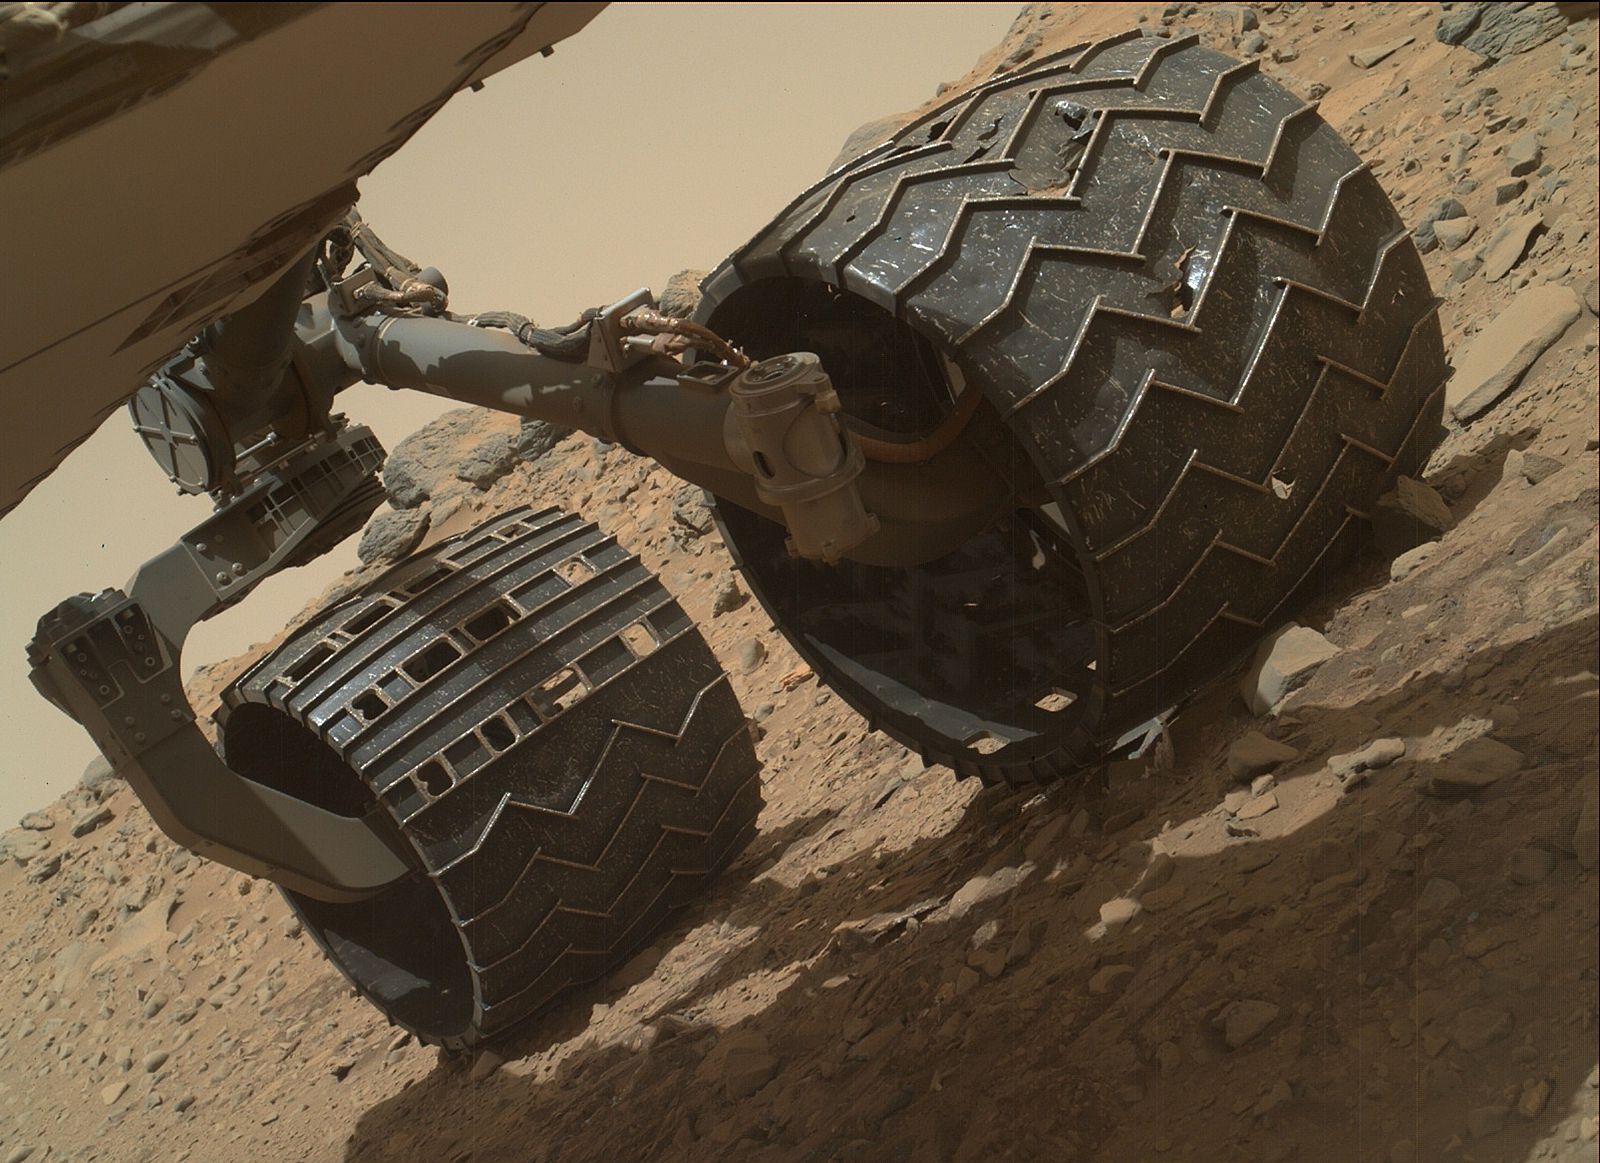 Imagen facilitada por la NASA del rover Curiosity en Marte